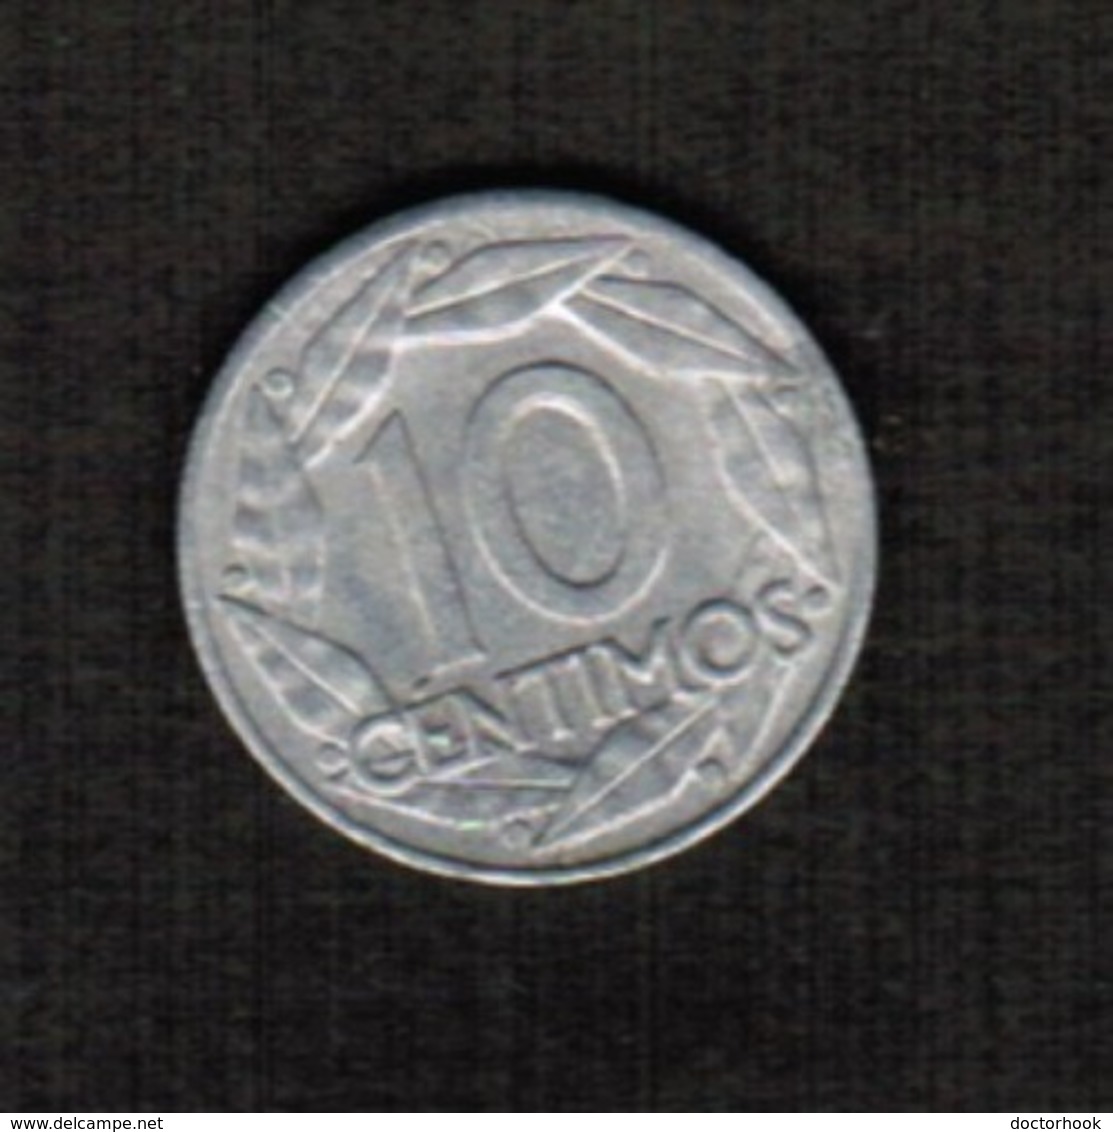 SPAIN  10 CENTIMOS 1959 (KM # 790) #5295 - 10 Céntimos